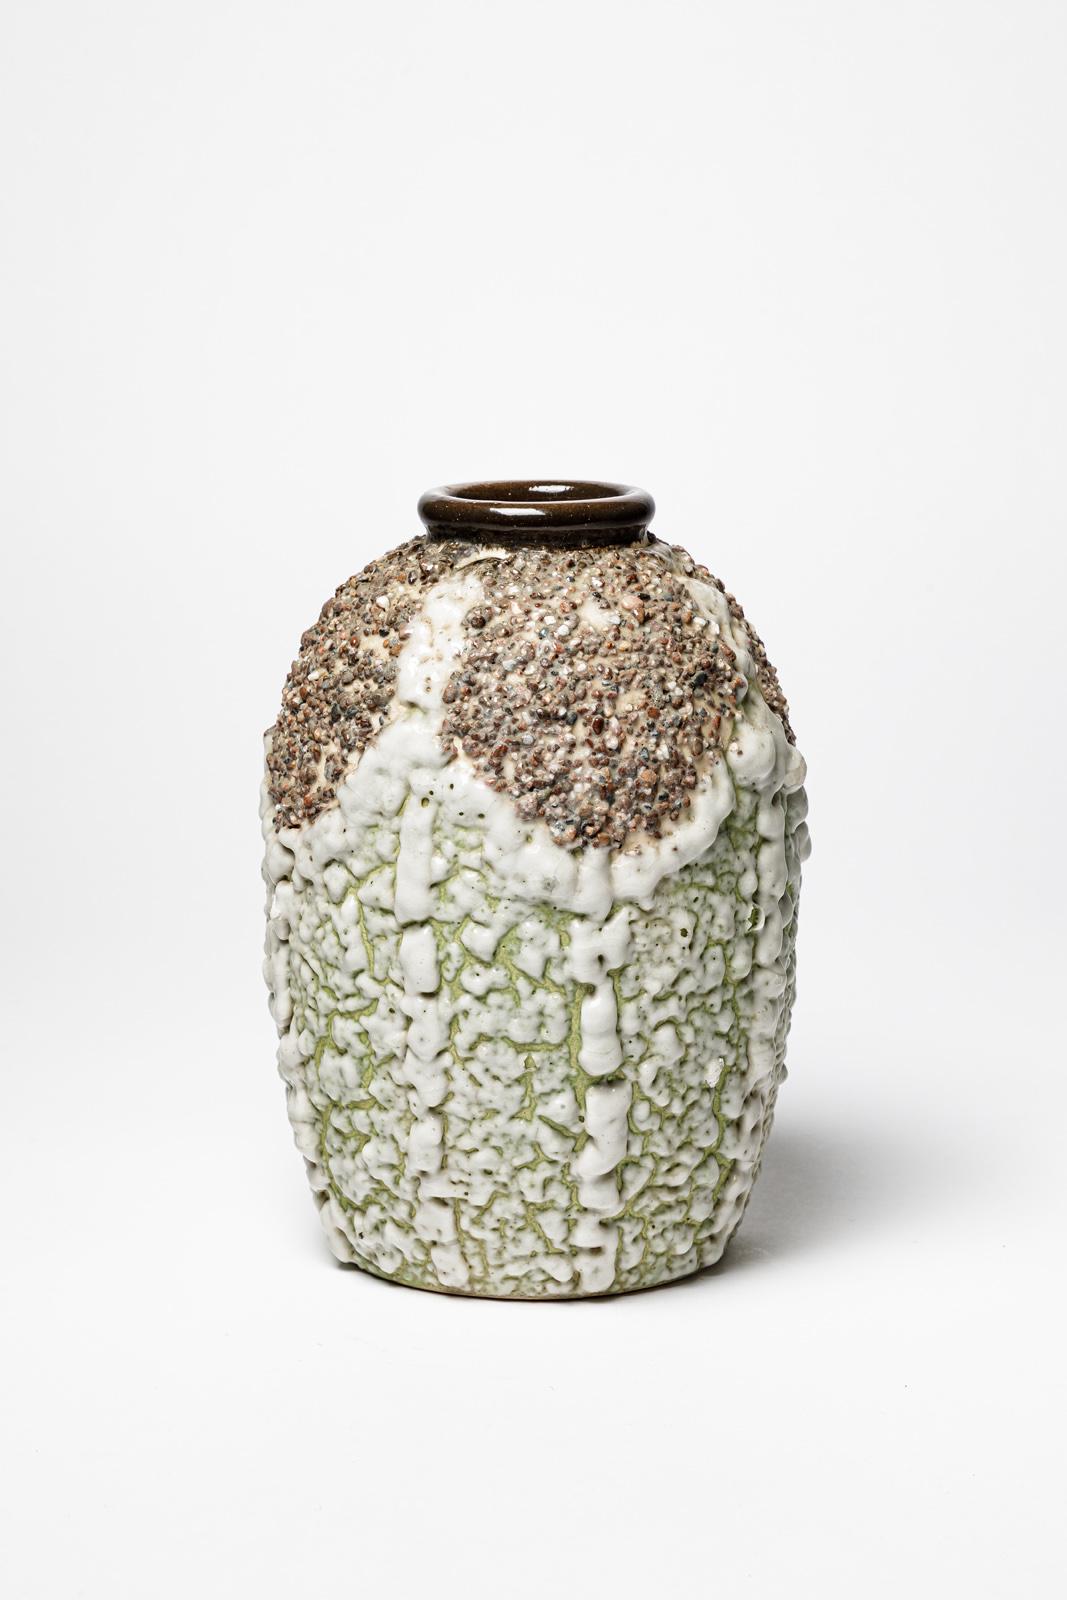 Louis Dage

Vase en céramique Art déco

Réalisé vers 1940

Couleurs des émaux céramiques blancs et verts

Condition originale parfaite.

Hauteur 24 cm
Grand 15 cm